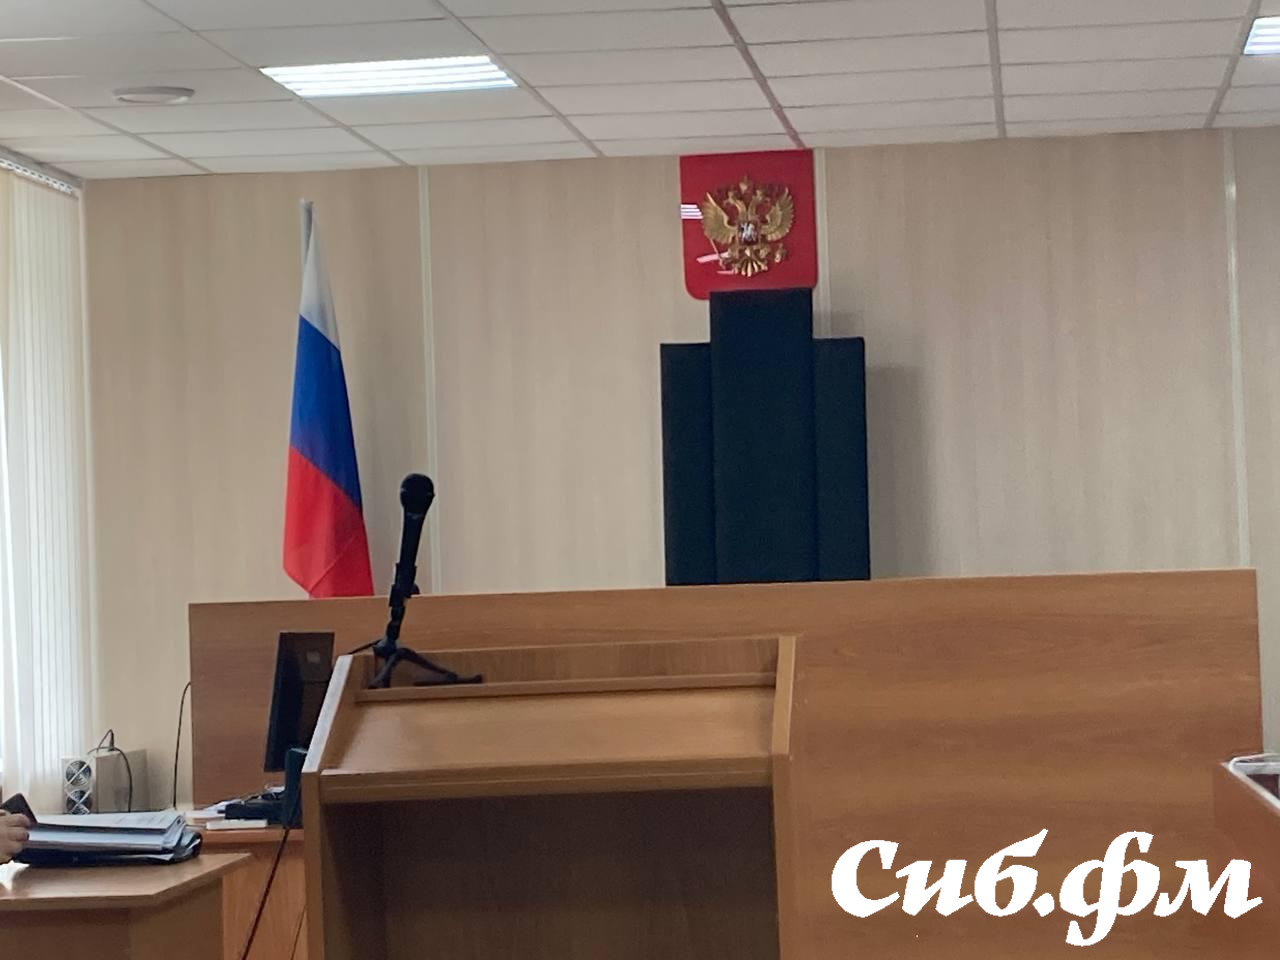 Фото «Прошу судить меня нестрого»: в Новосибирске 19-летняя няня получила 2 года колонии после гибели двоих детей на пожаре 4